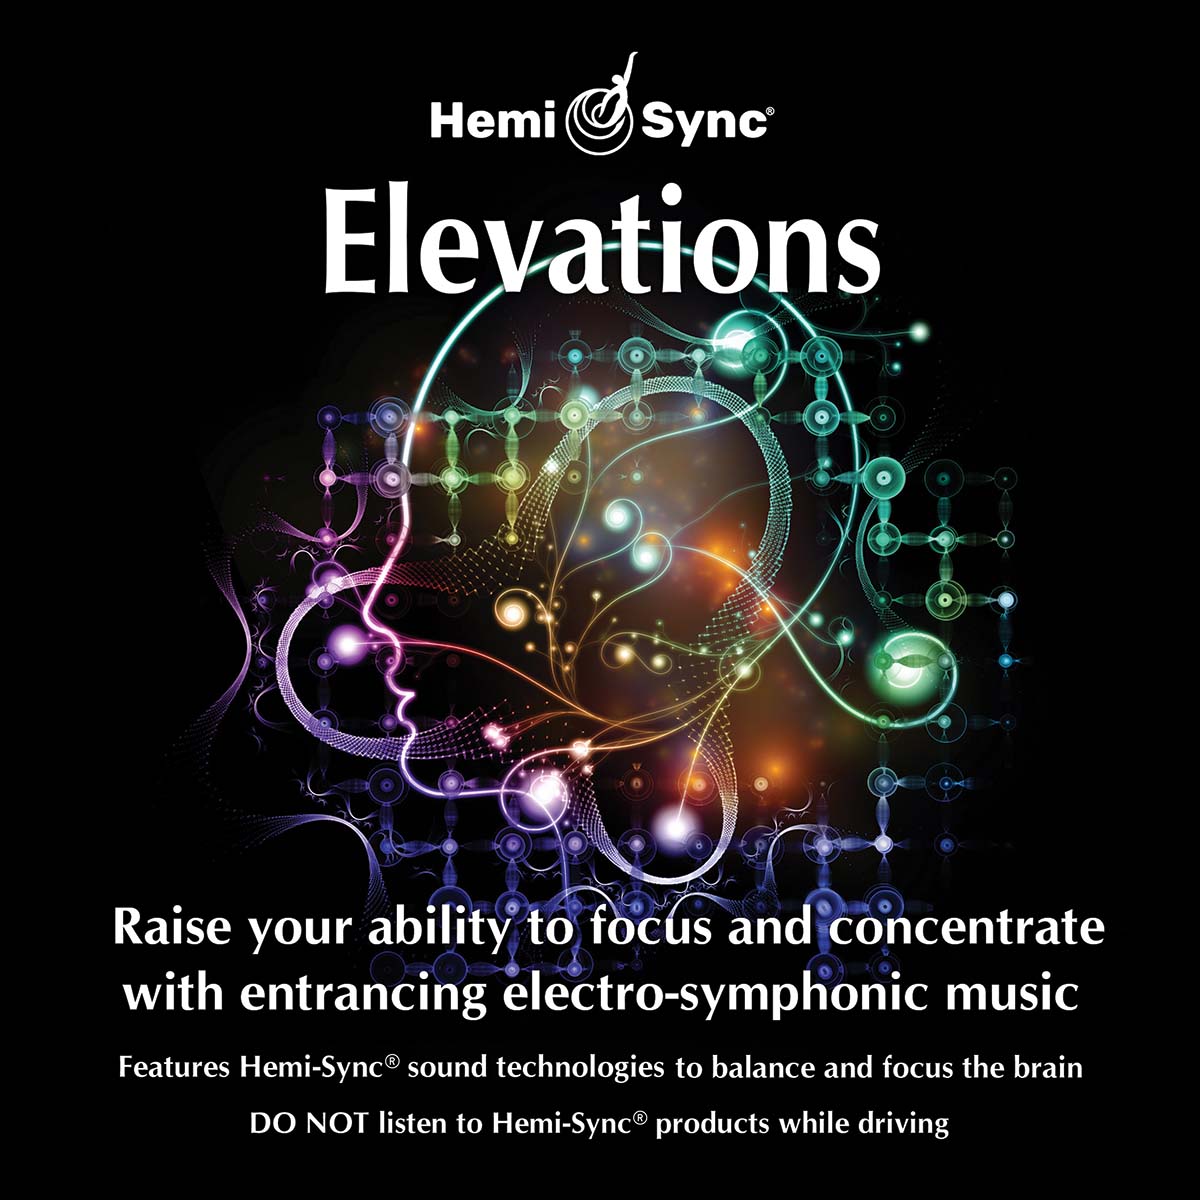 ヘミシンクCD Elevations エレベーションズ 【正規品】 音楽療法CD Hemi-Sync モンロープロダクツ 【クーポン対象】【39ショップ】